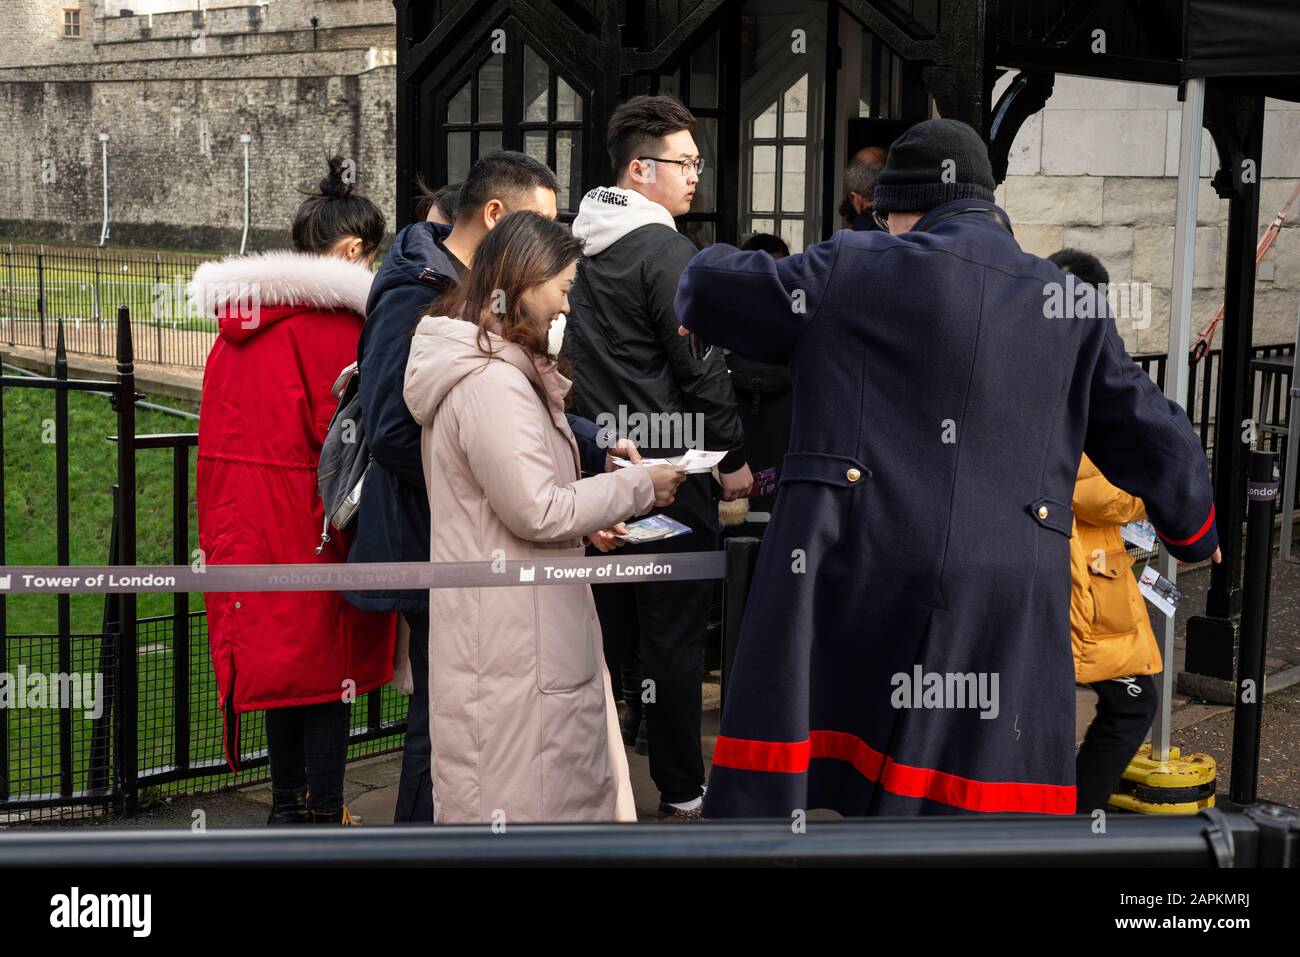 Touristen und ein Beefeater am Eingang des Tower of London Tickets per Smartphone prüfen, London, Großbritannien Stockfoto